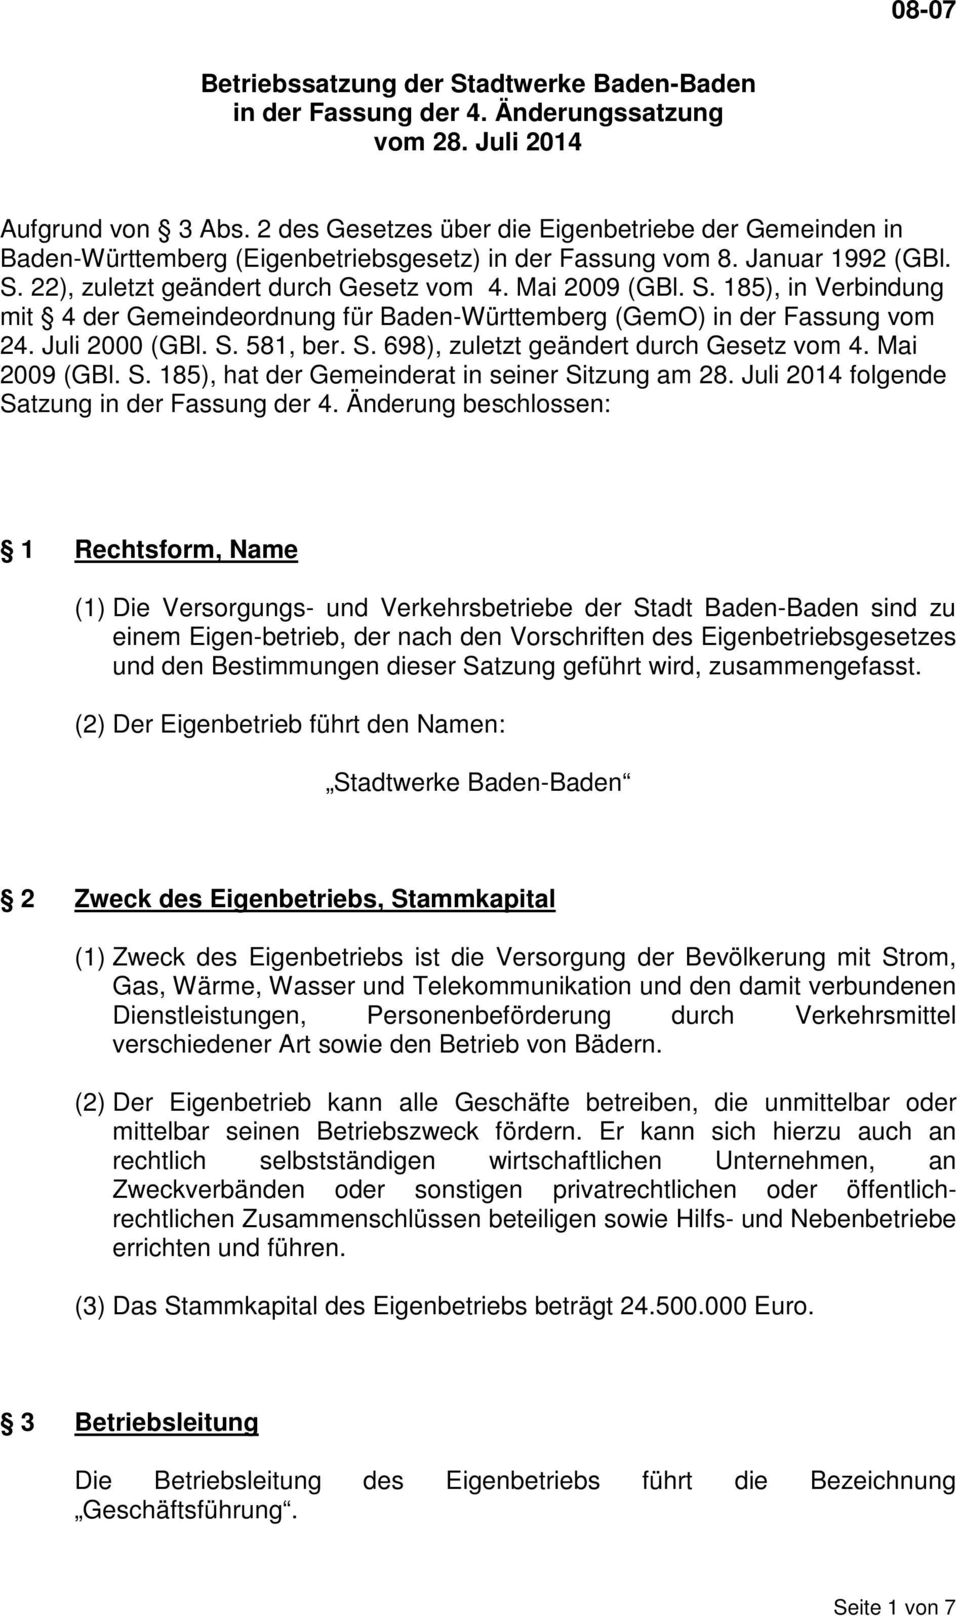 22), zuletzt geändert durch Gesetz vom 4. Mai 2009 (GBl. S. 185), in Verbindung mit 4 der Gemeindeordnung für Baden-Württemberg (GemO) in der Fassung vom 24. Juli 2000 (GBl. S. 581, ber. S. 698), zuletzt geändert durch Gesetz vom 4.